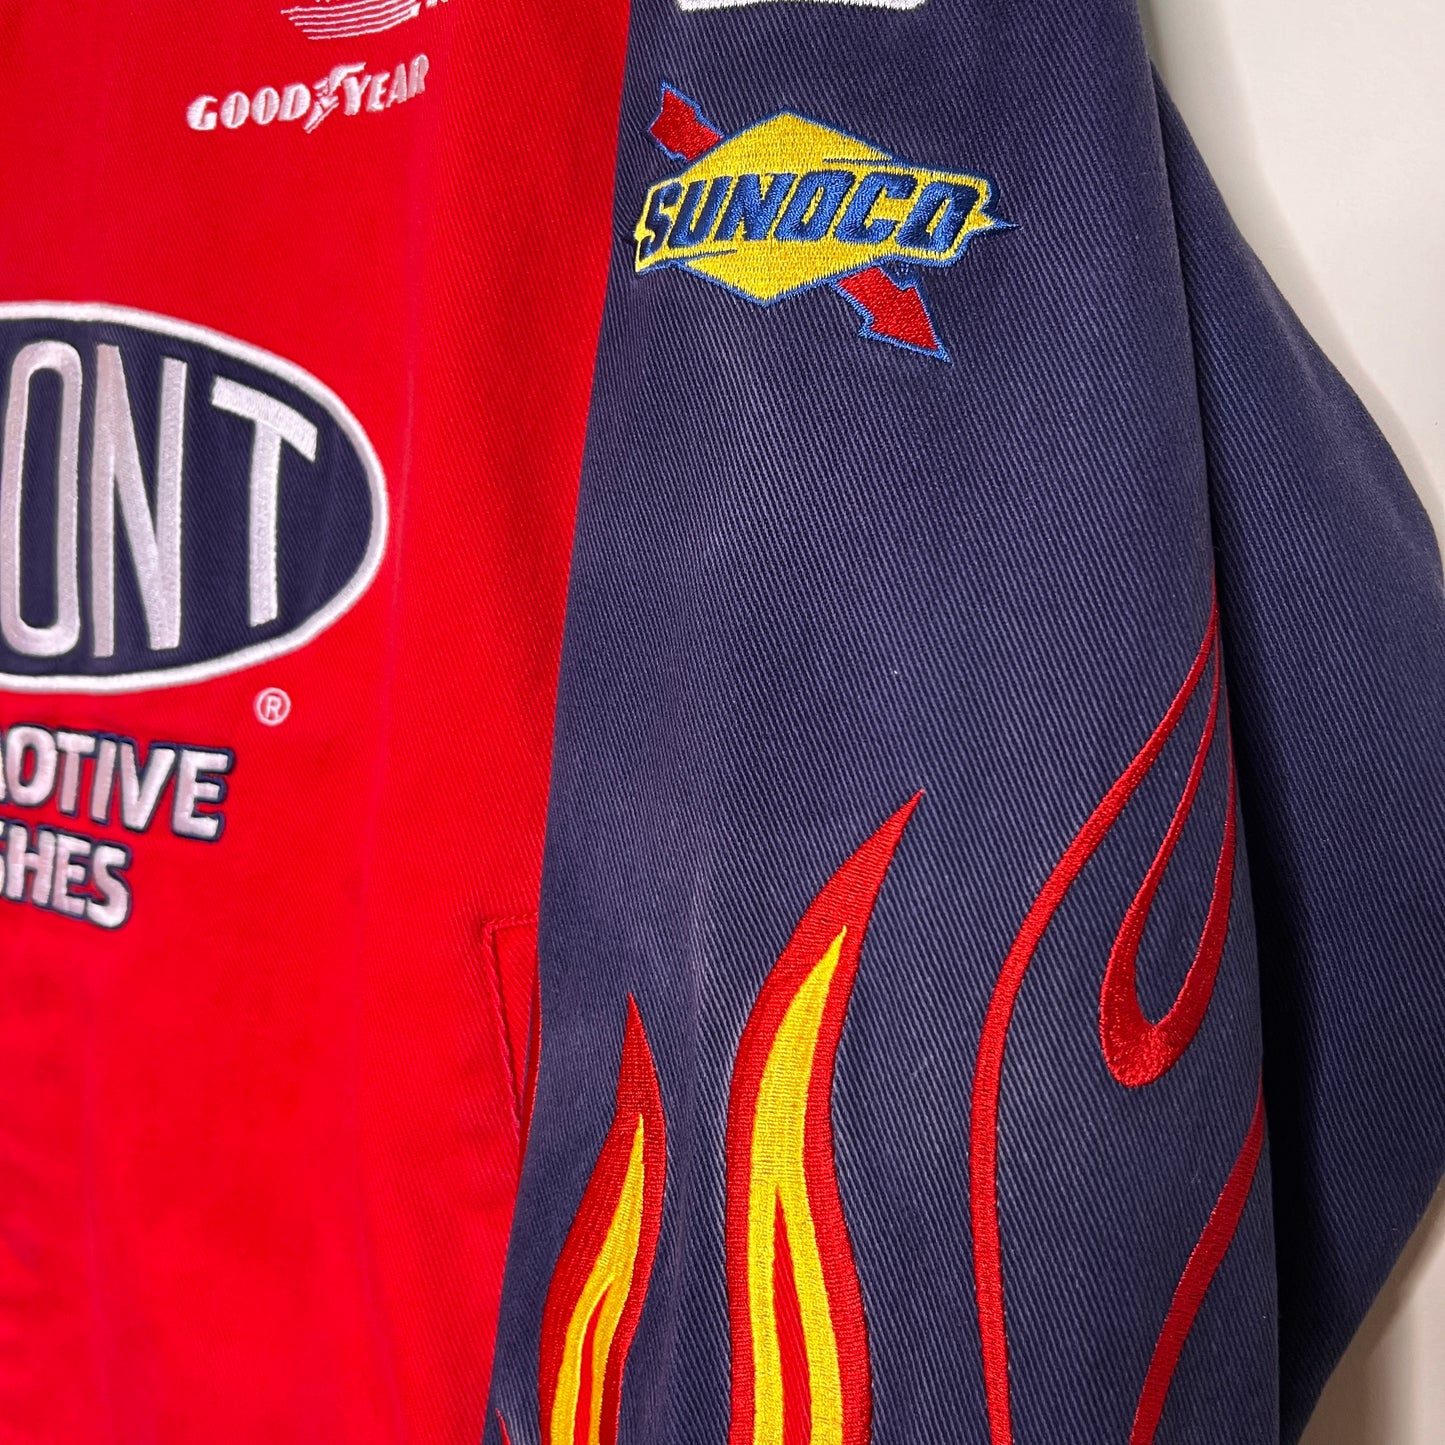 Dupont Flames Nascar Jacket | Chase Authentics